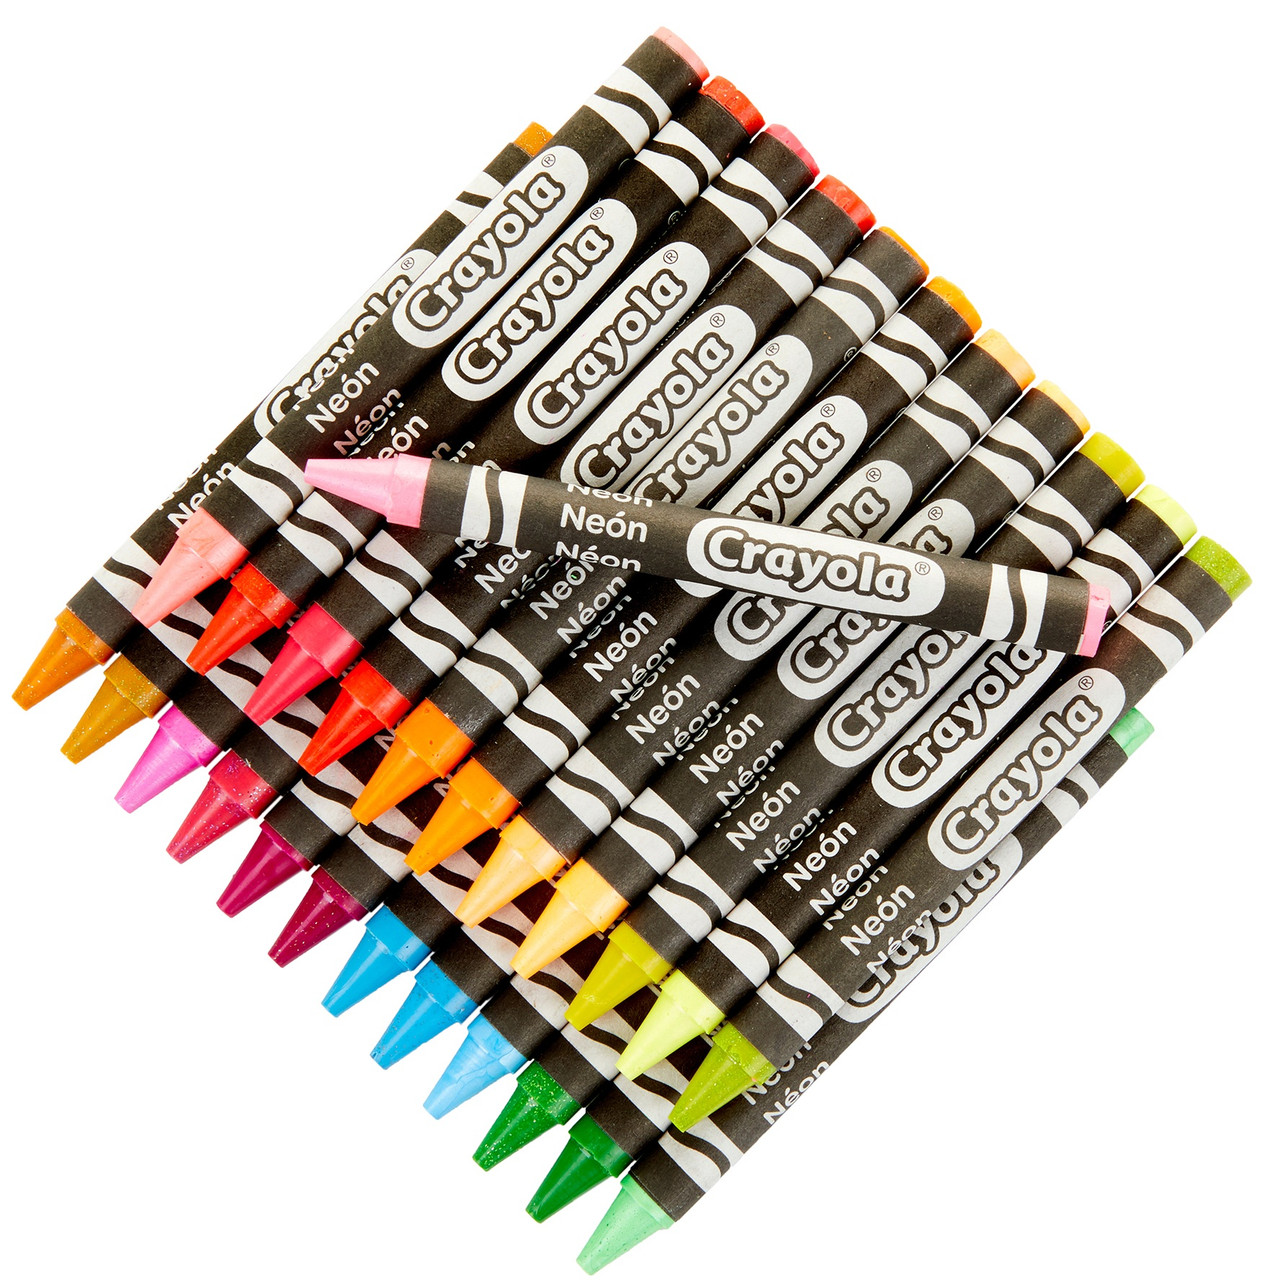 Crayola Crayons-Neon 24/Pkg 52-3410 - GettyCrafts